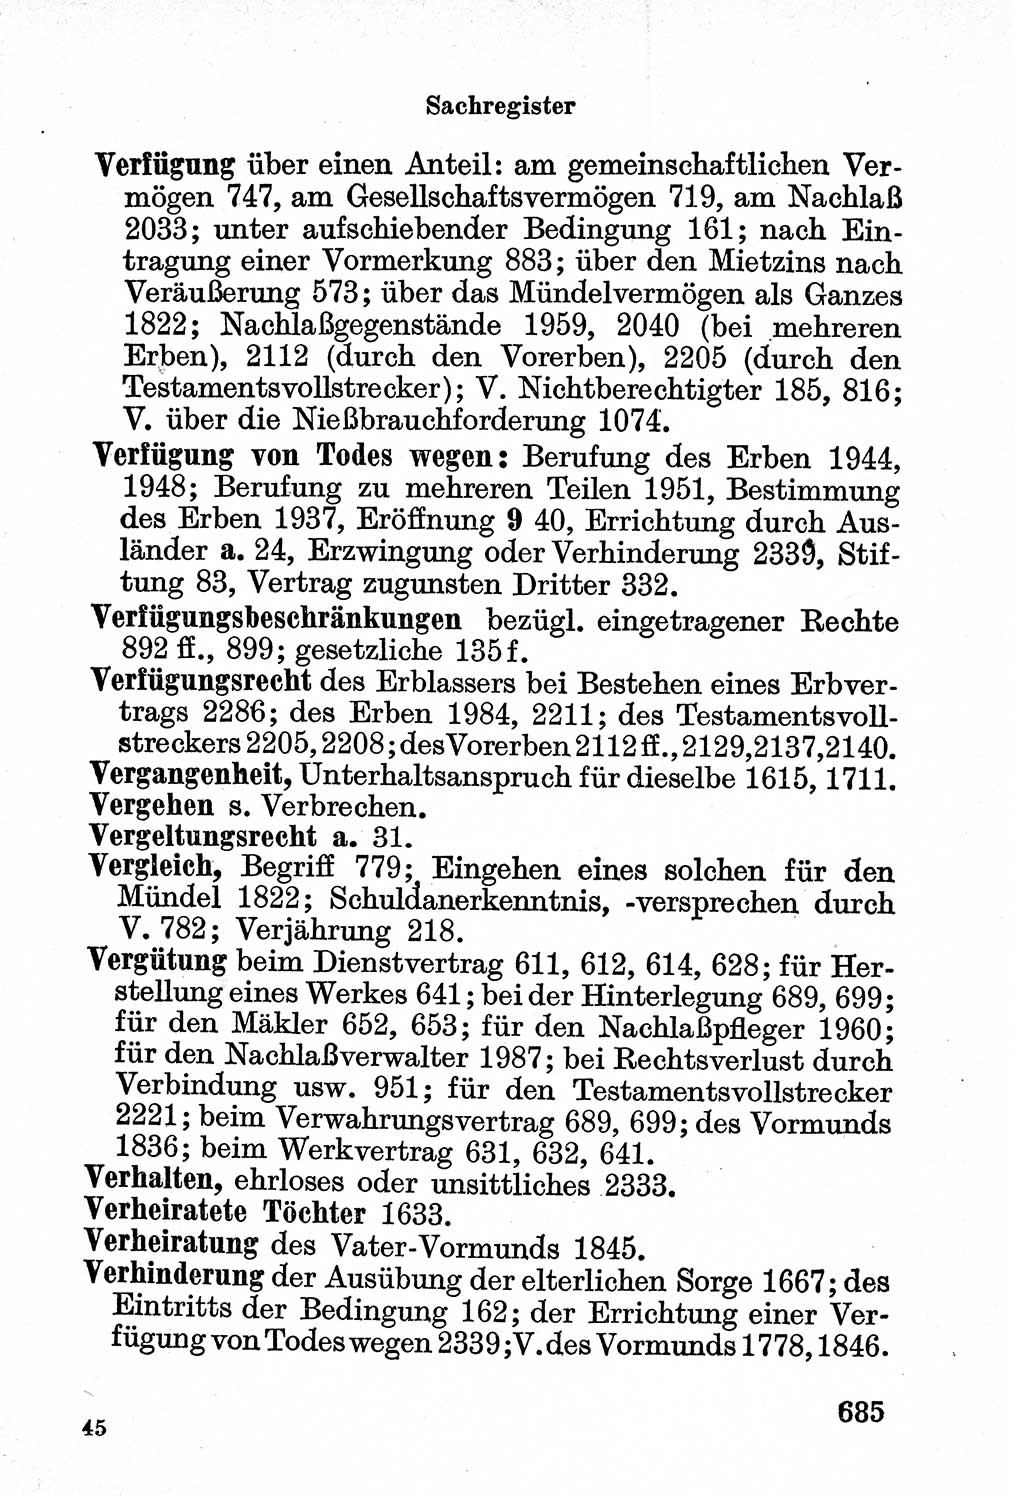 Bürgerliches Gesetzbuch (BGB) nebst wichtigen Nebengesetzen [Deutsche Demokratische Republik (DDR)] 1956, Seite 685 (BGB Nebenges. DDR 1956, S. 685)